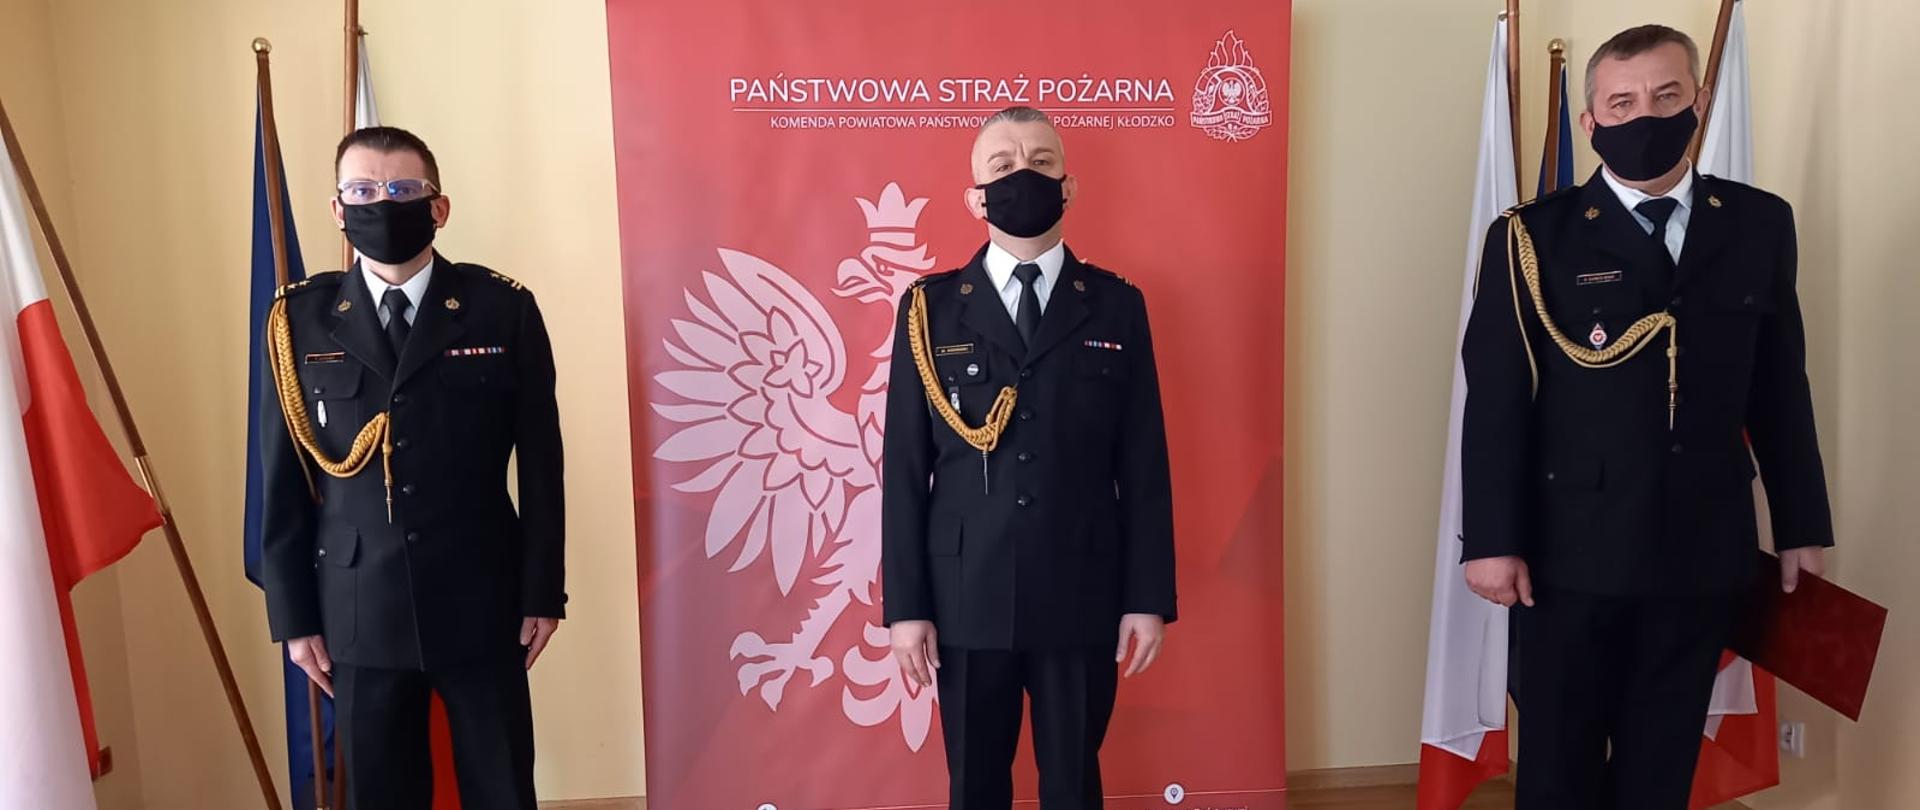 Komendant Powiatowy PSP w Kłodzku, Zastępca Komendanta Powiatowego PSP w Kłodzku oraz Dowódca JRG w Kłodzku w umundurowaniu wyjściowym.